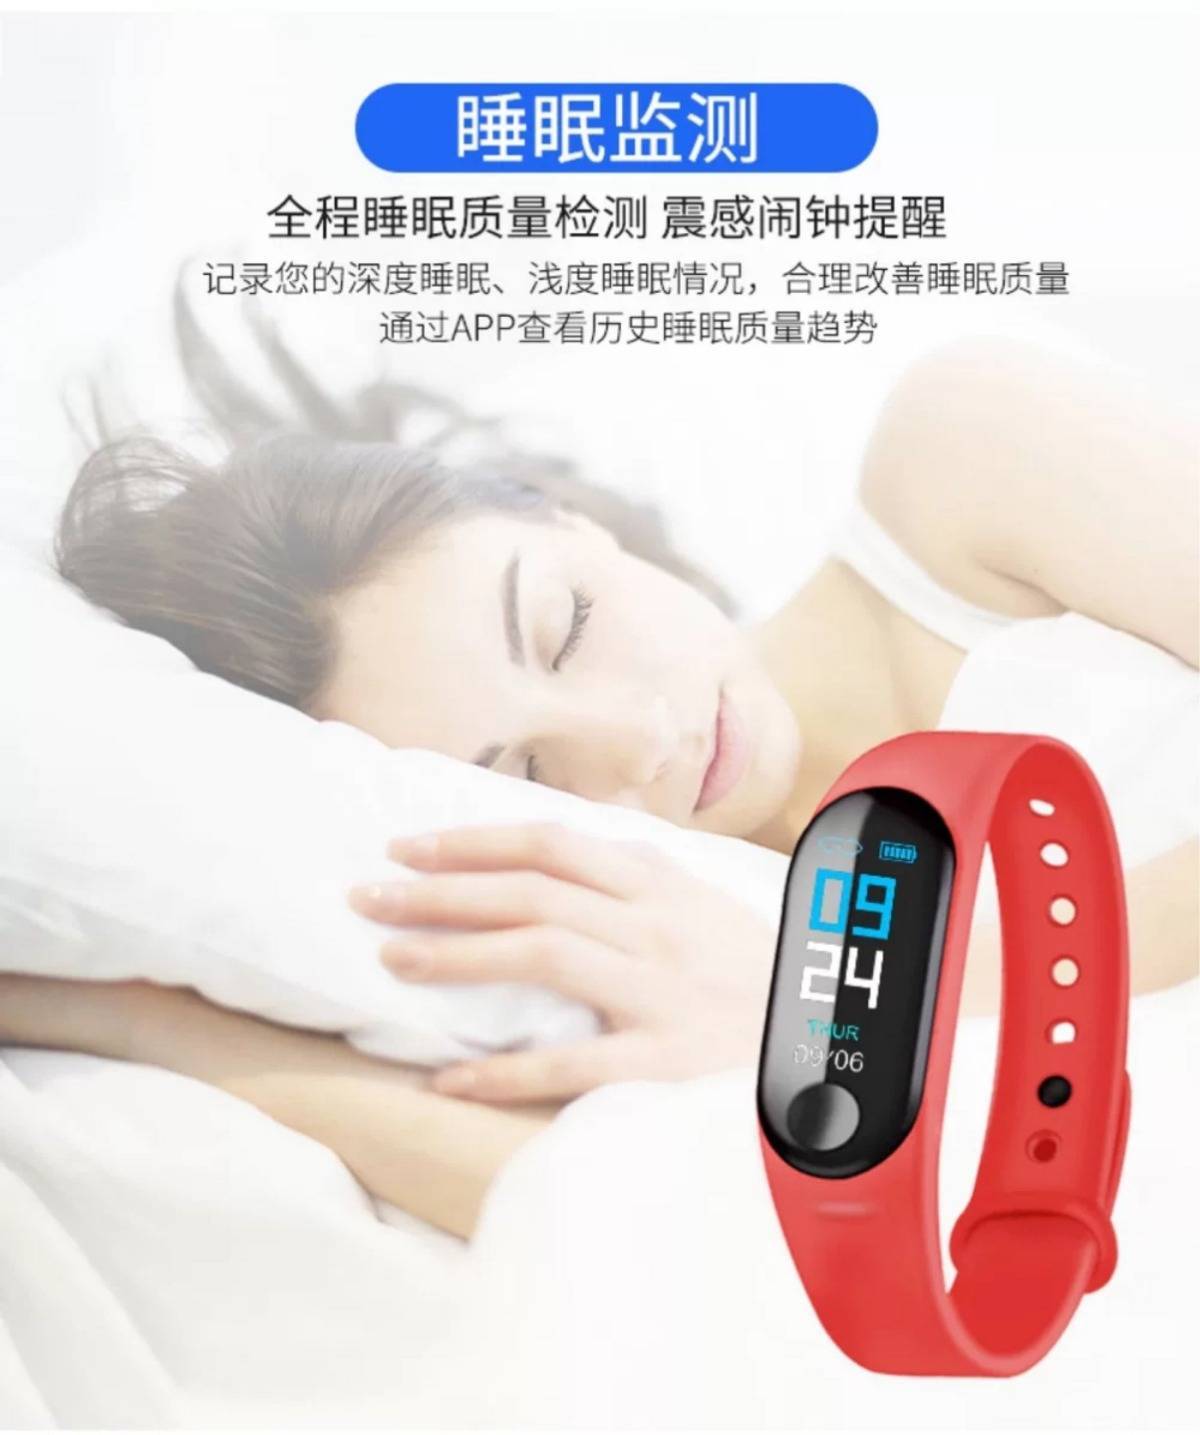 【热销】蓝牙智能手环彩屏蓝牙计步器运动睡眠监测手表提醒血压